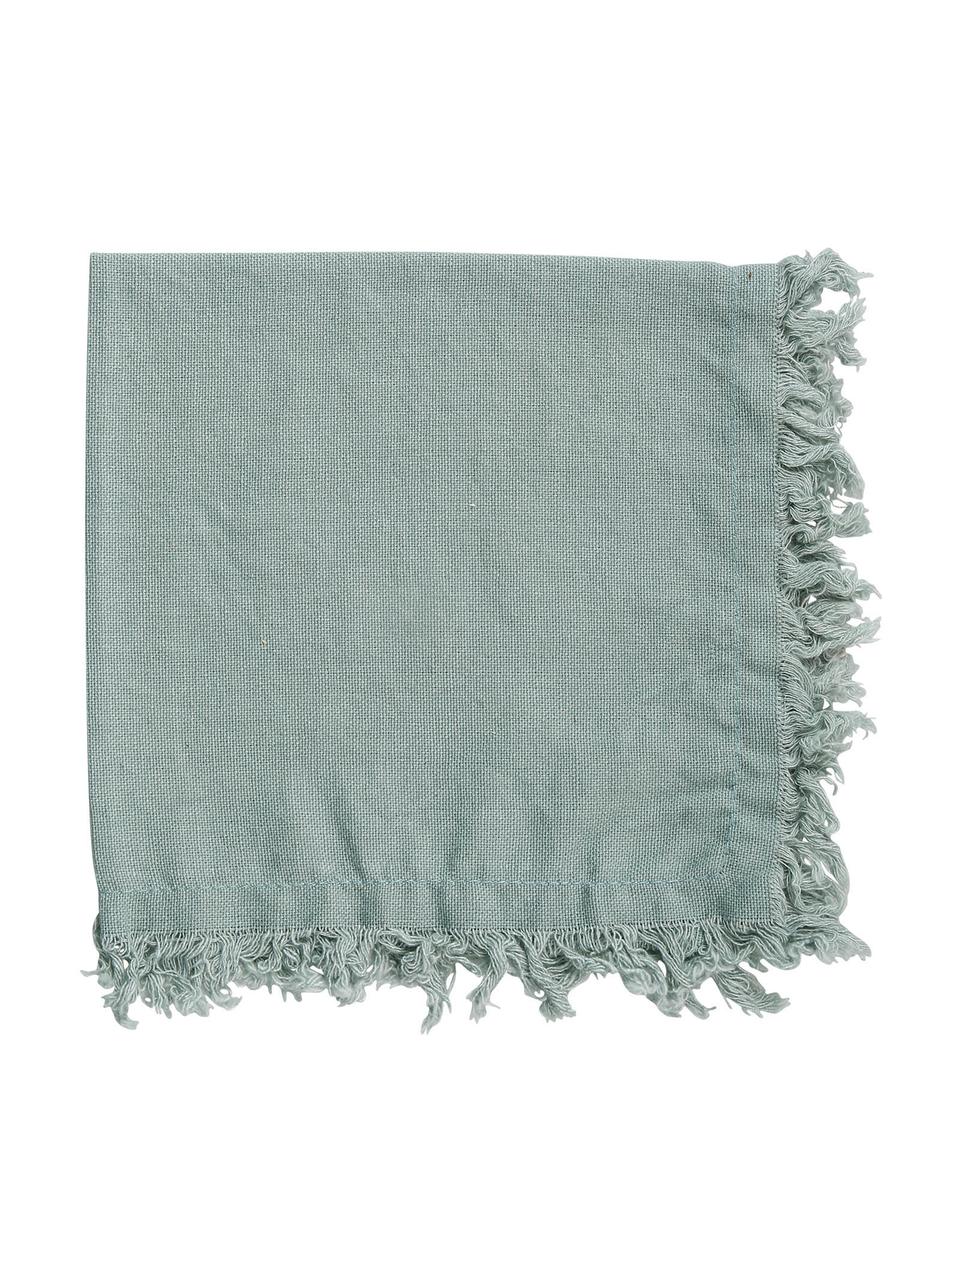 Serwetka z bawełny z frędzlami Nalia, 2 szt., 100% bawełna, Szałwiowy zielony, S 35 x D 35 cm